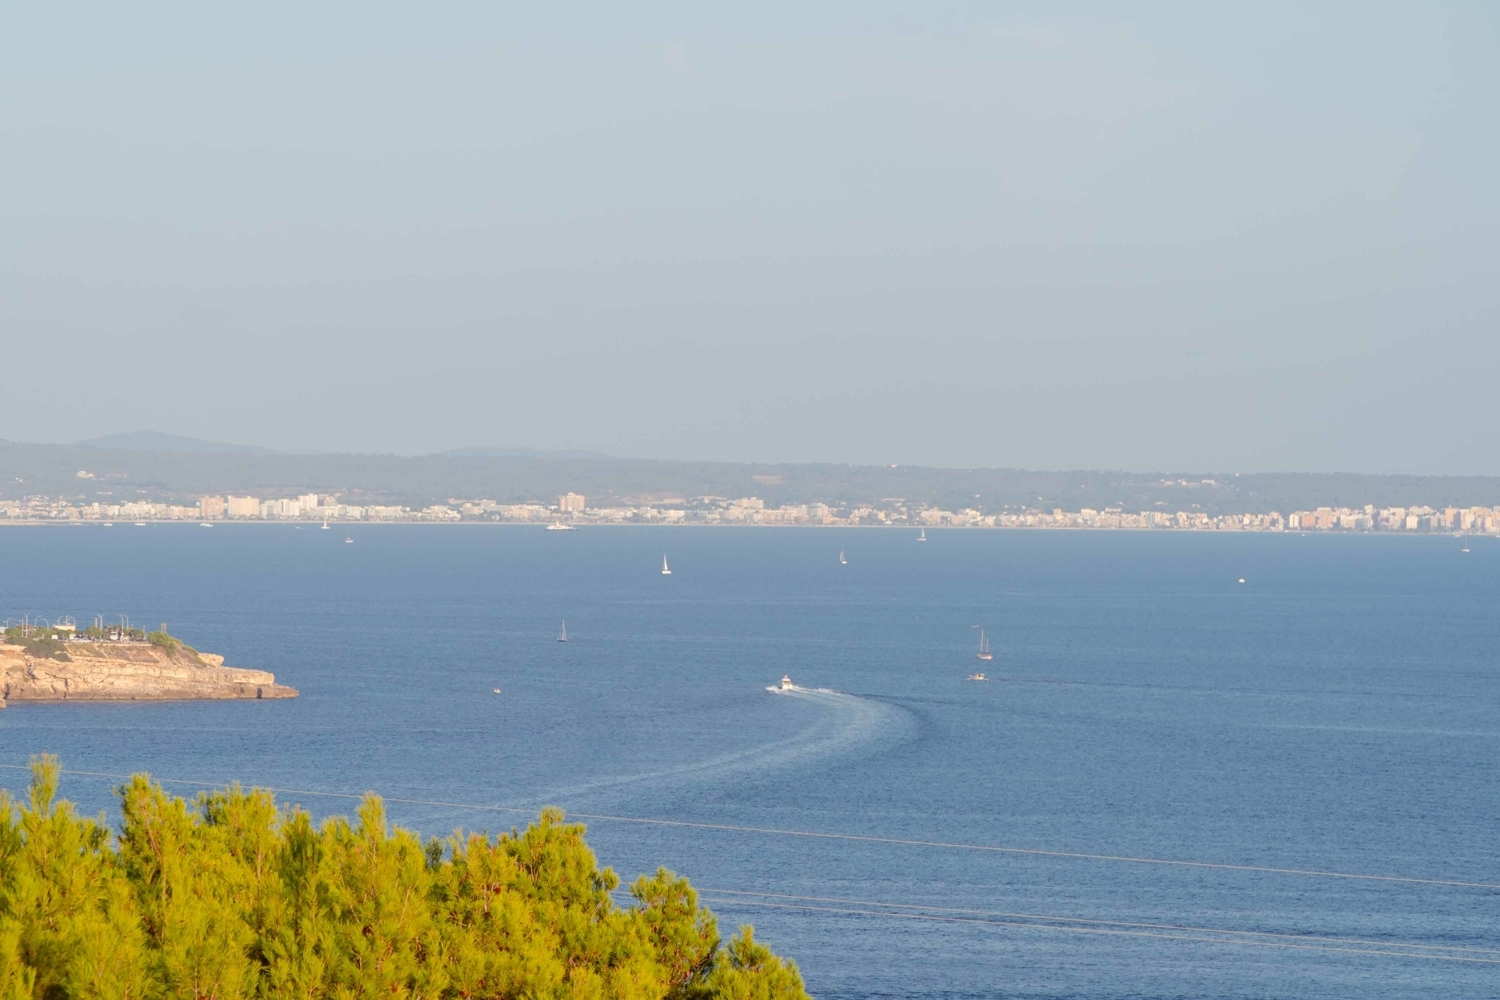 Elegante Wohnung mit Panoramablick auf das Meer in Cas Catalá